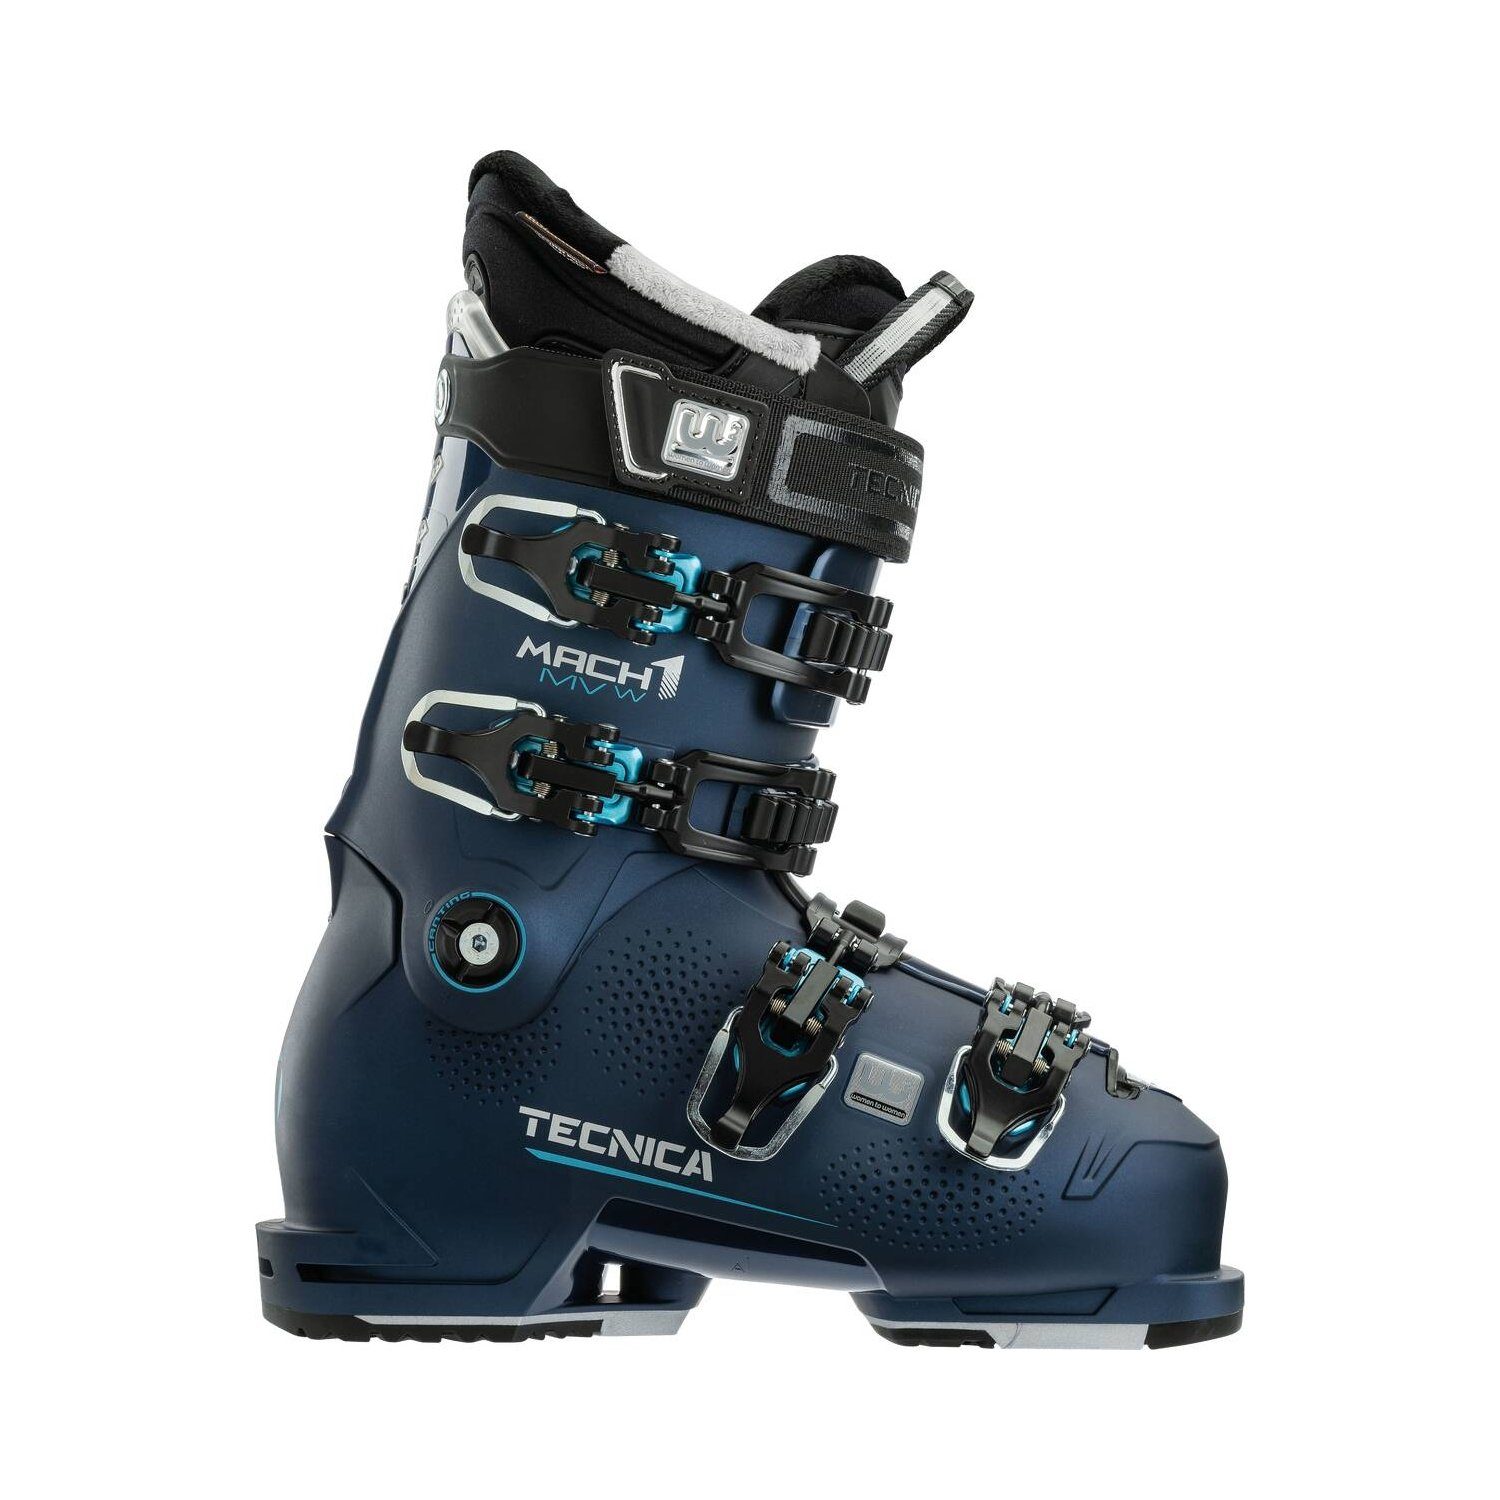 TECNICA Damen Skischuhe MACH1 MV 105 - 869 BLUE NIGHT / 24,5 Skischuh